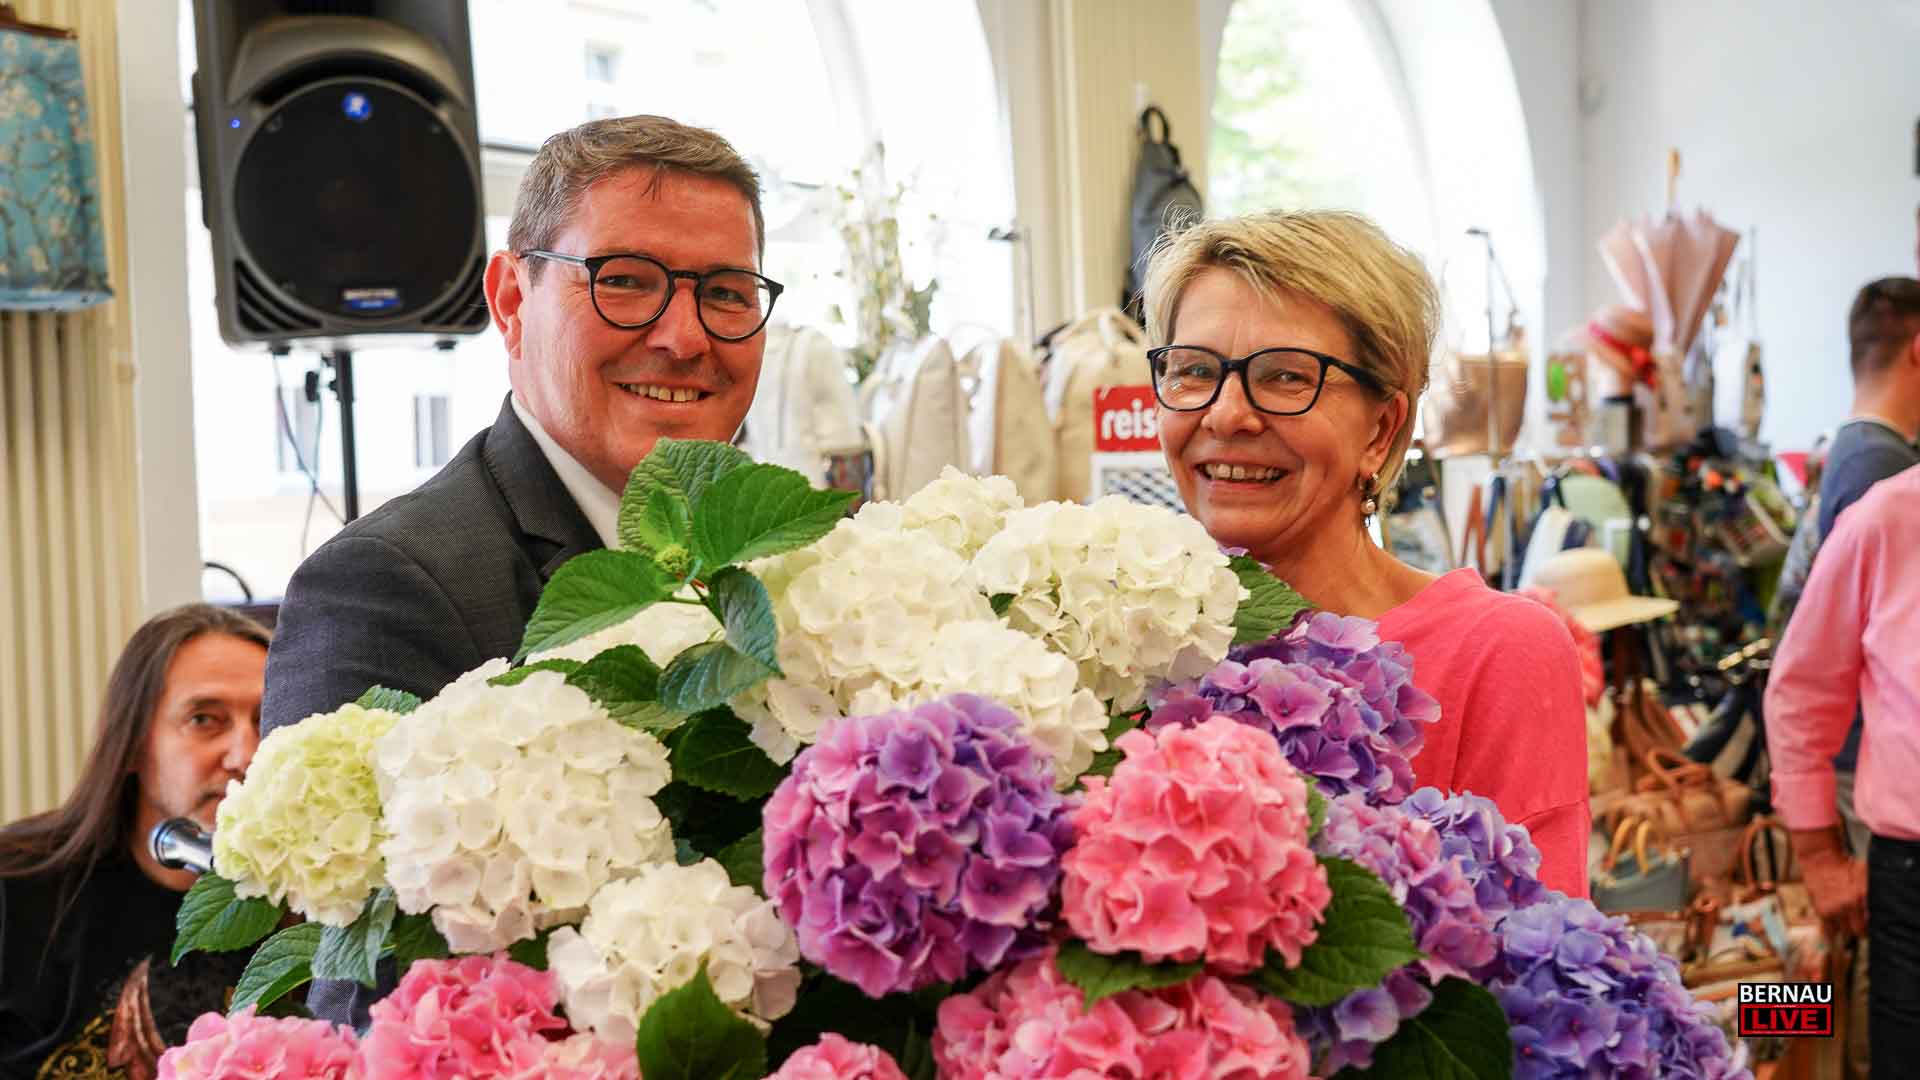 150 Jahre Lederwaren Radtke in Bernau – Herzlichen Glückwunsch!